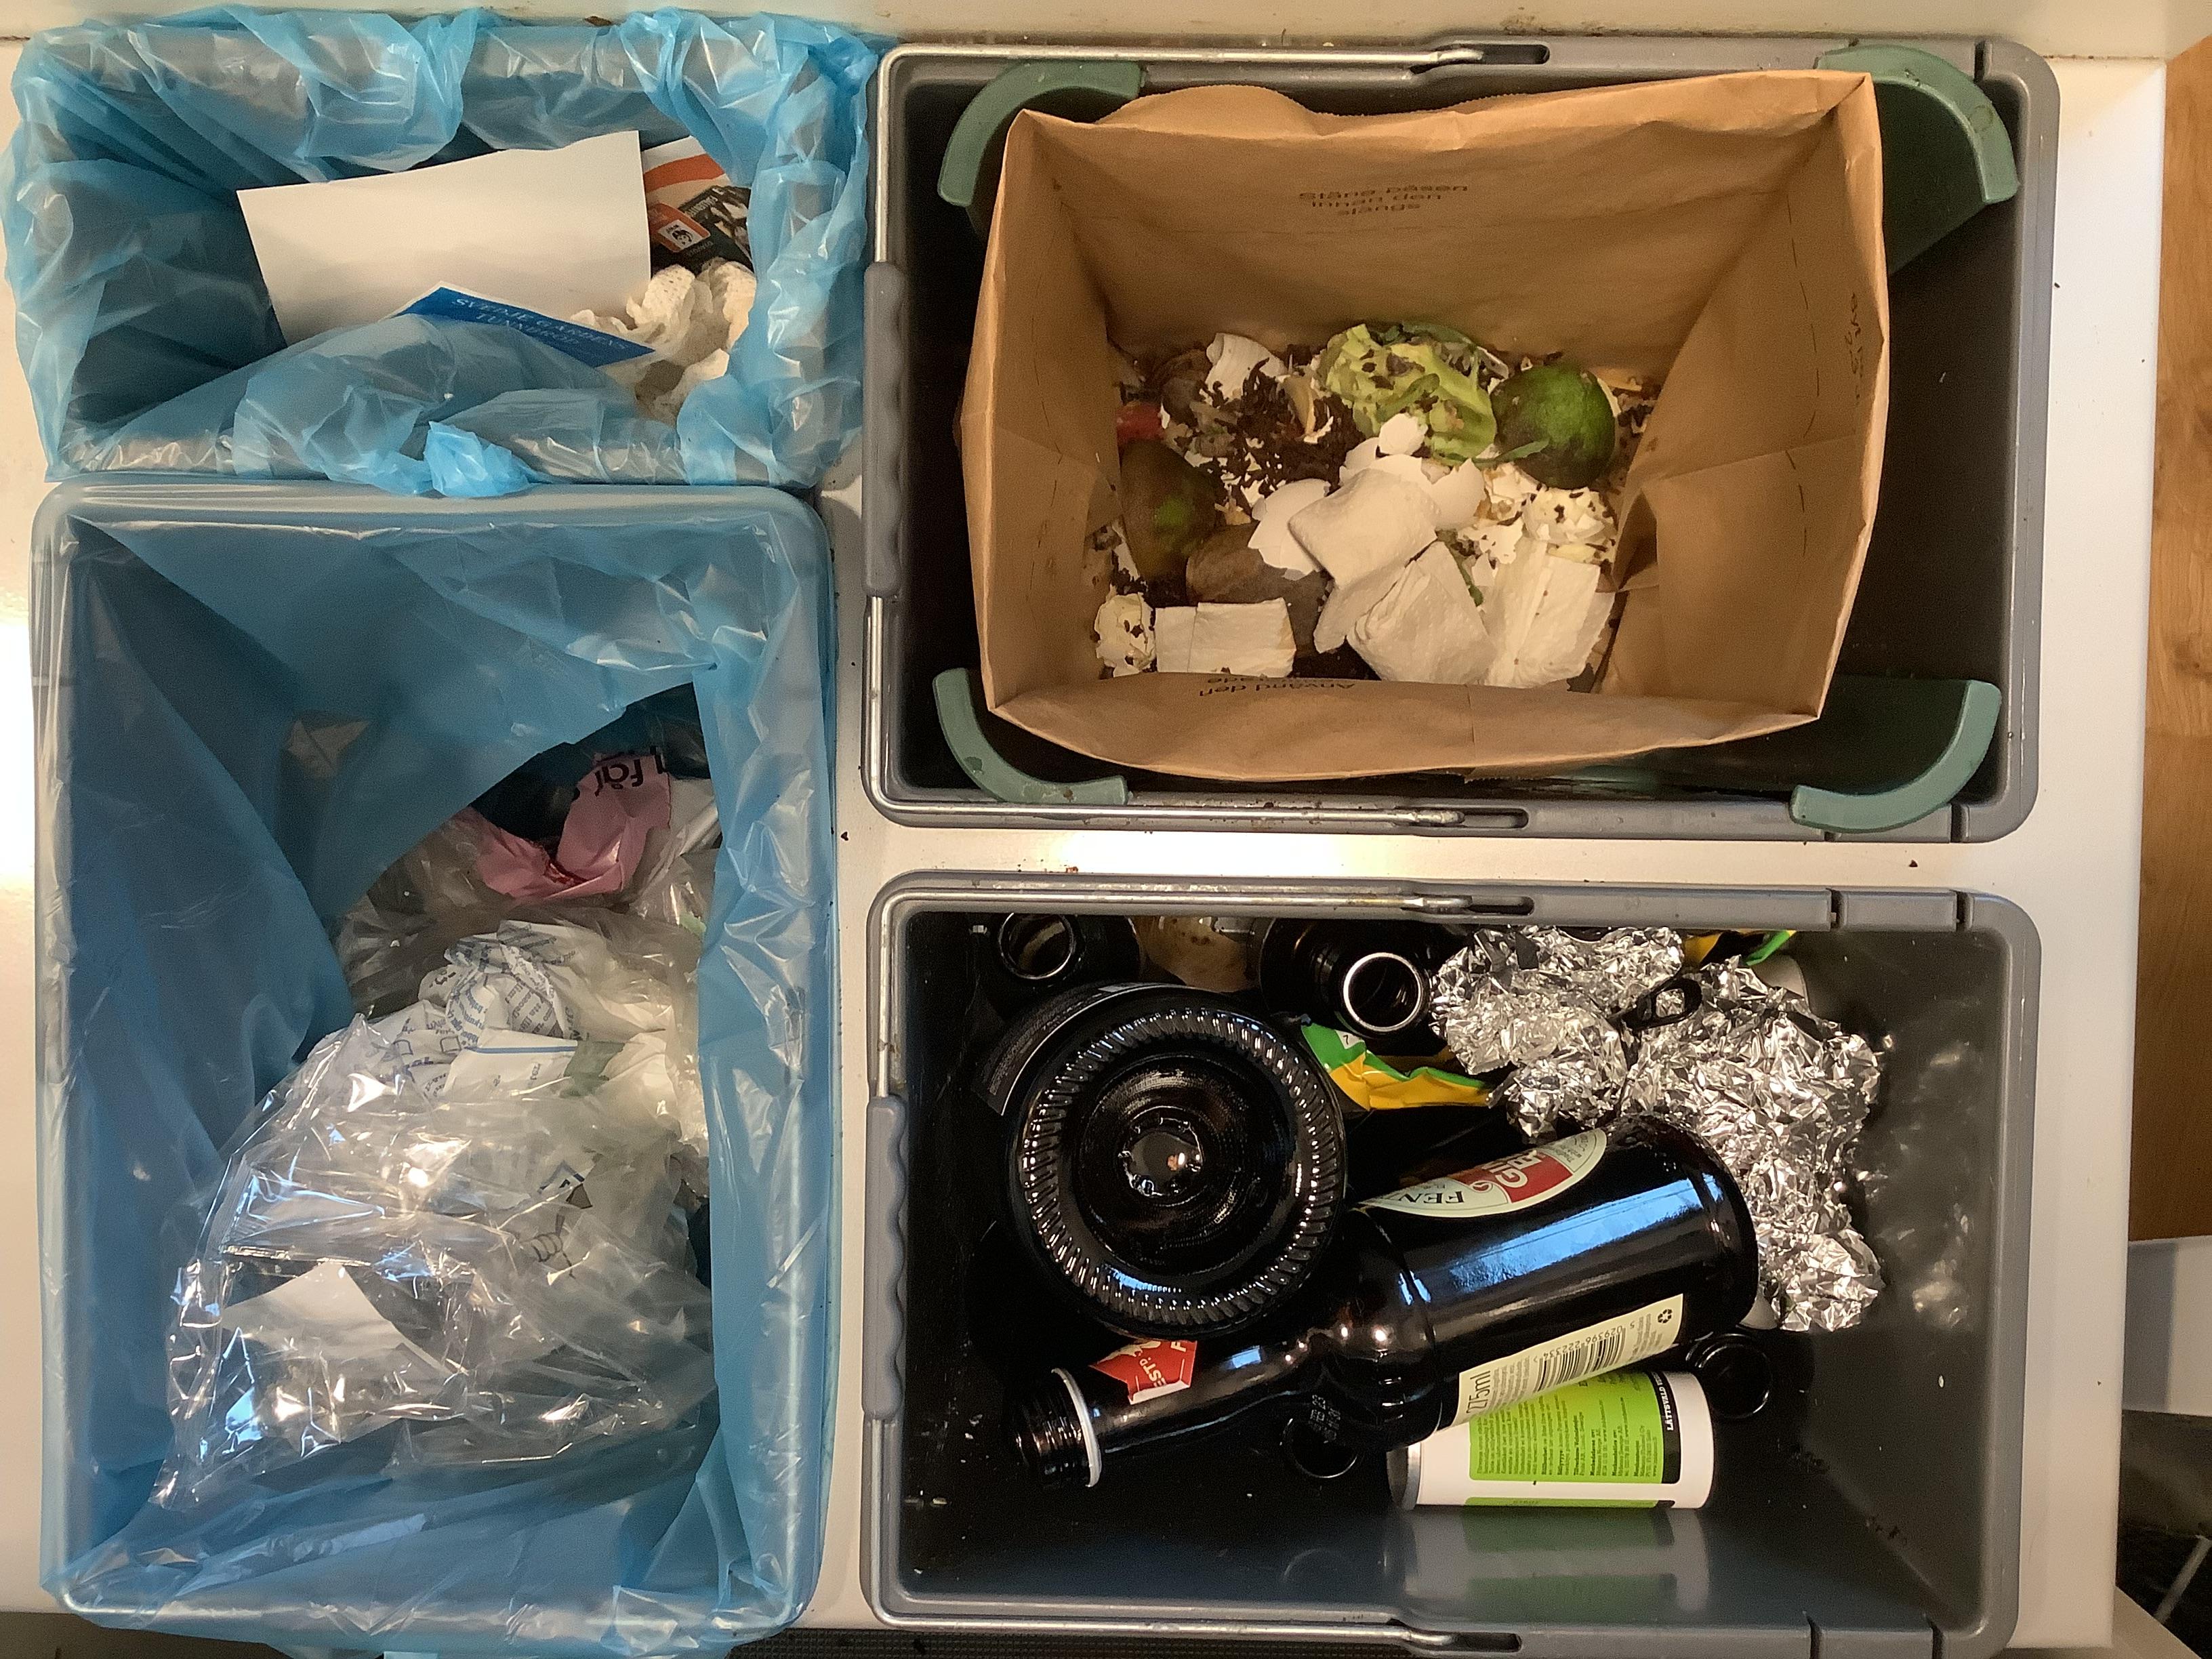 Bilden visar fyra sorteringskärl under en diskbänk. En för restavfall, en för matavfall, en för plast och en för glas och metall.